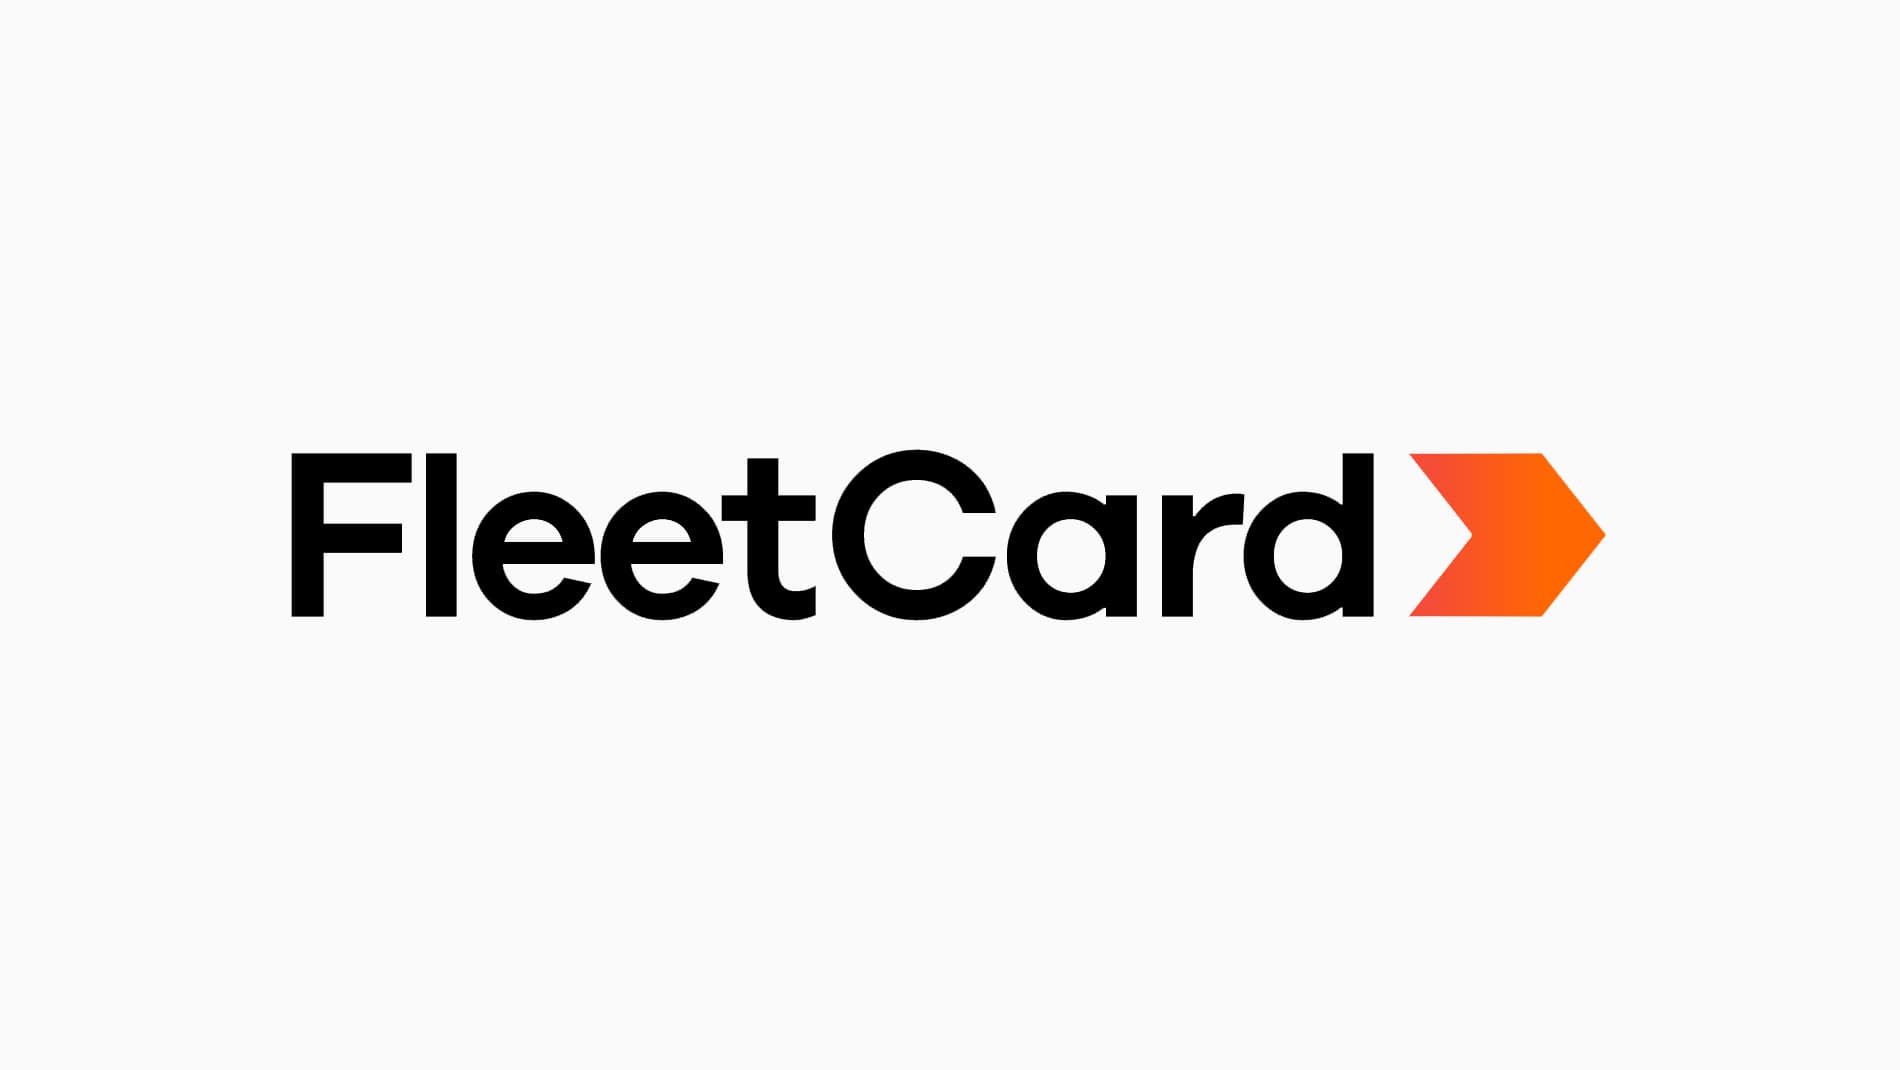 The FleetCard logo